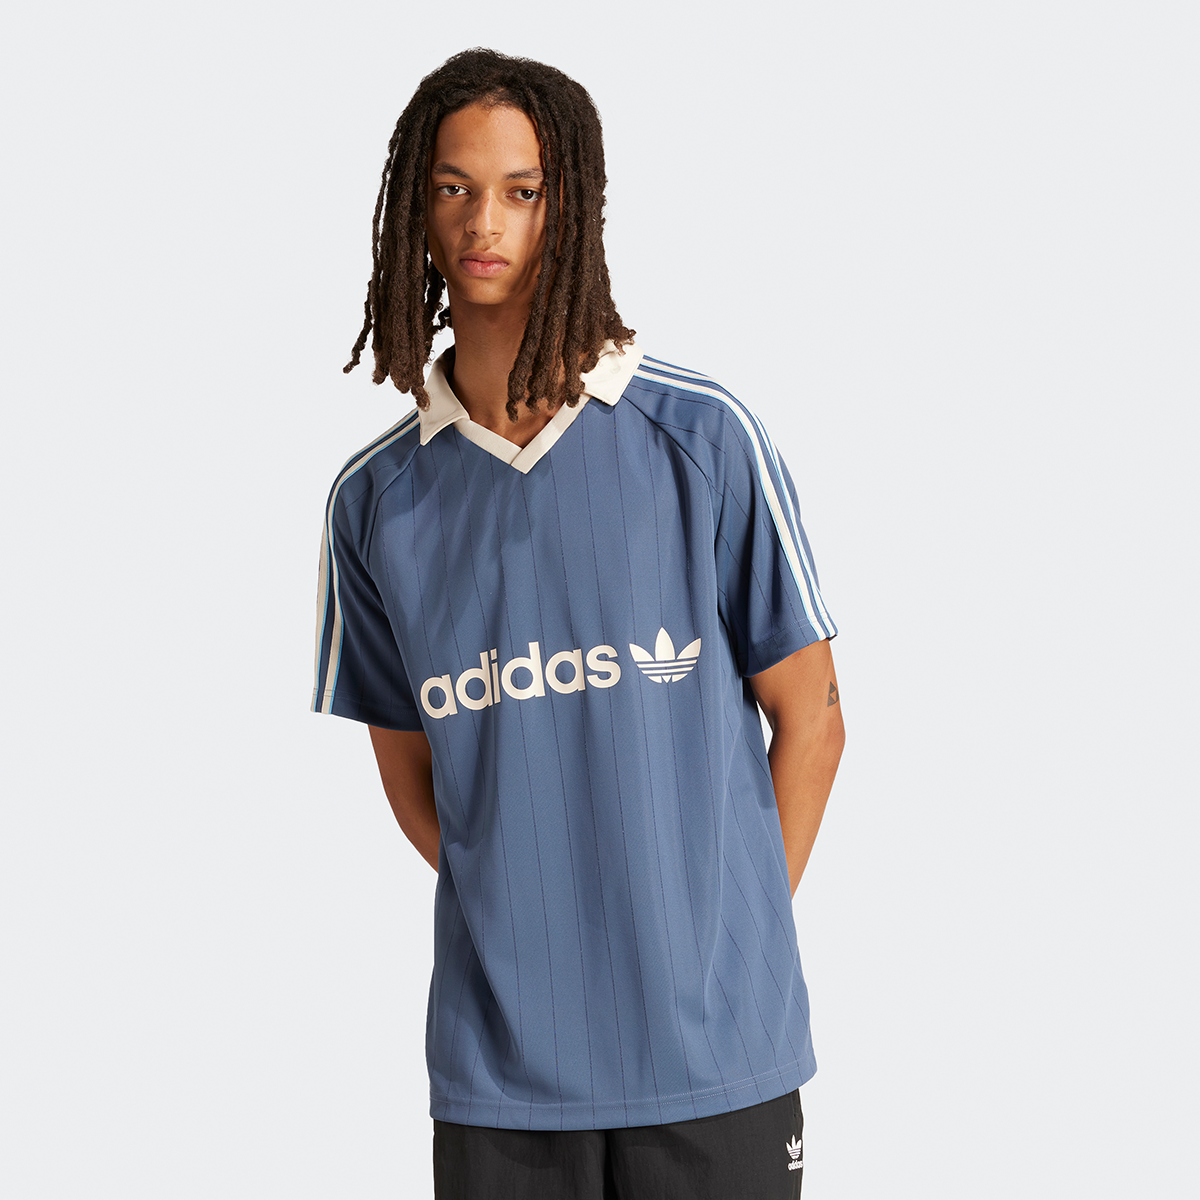 Adidas Originals 3-stripes Jersey Sportshirts Heren preloved ink maat: XL beschikbare maaten:S M L XL